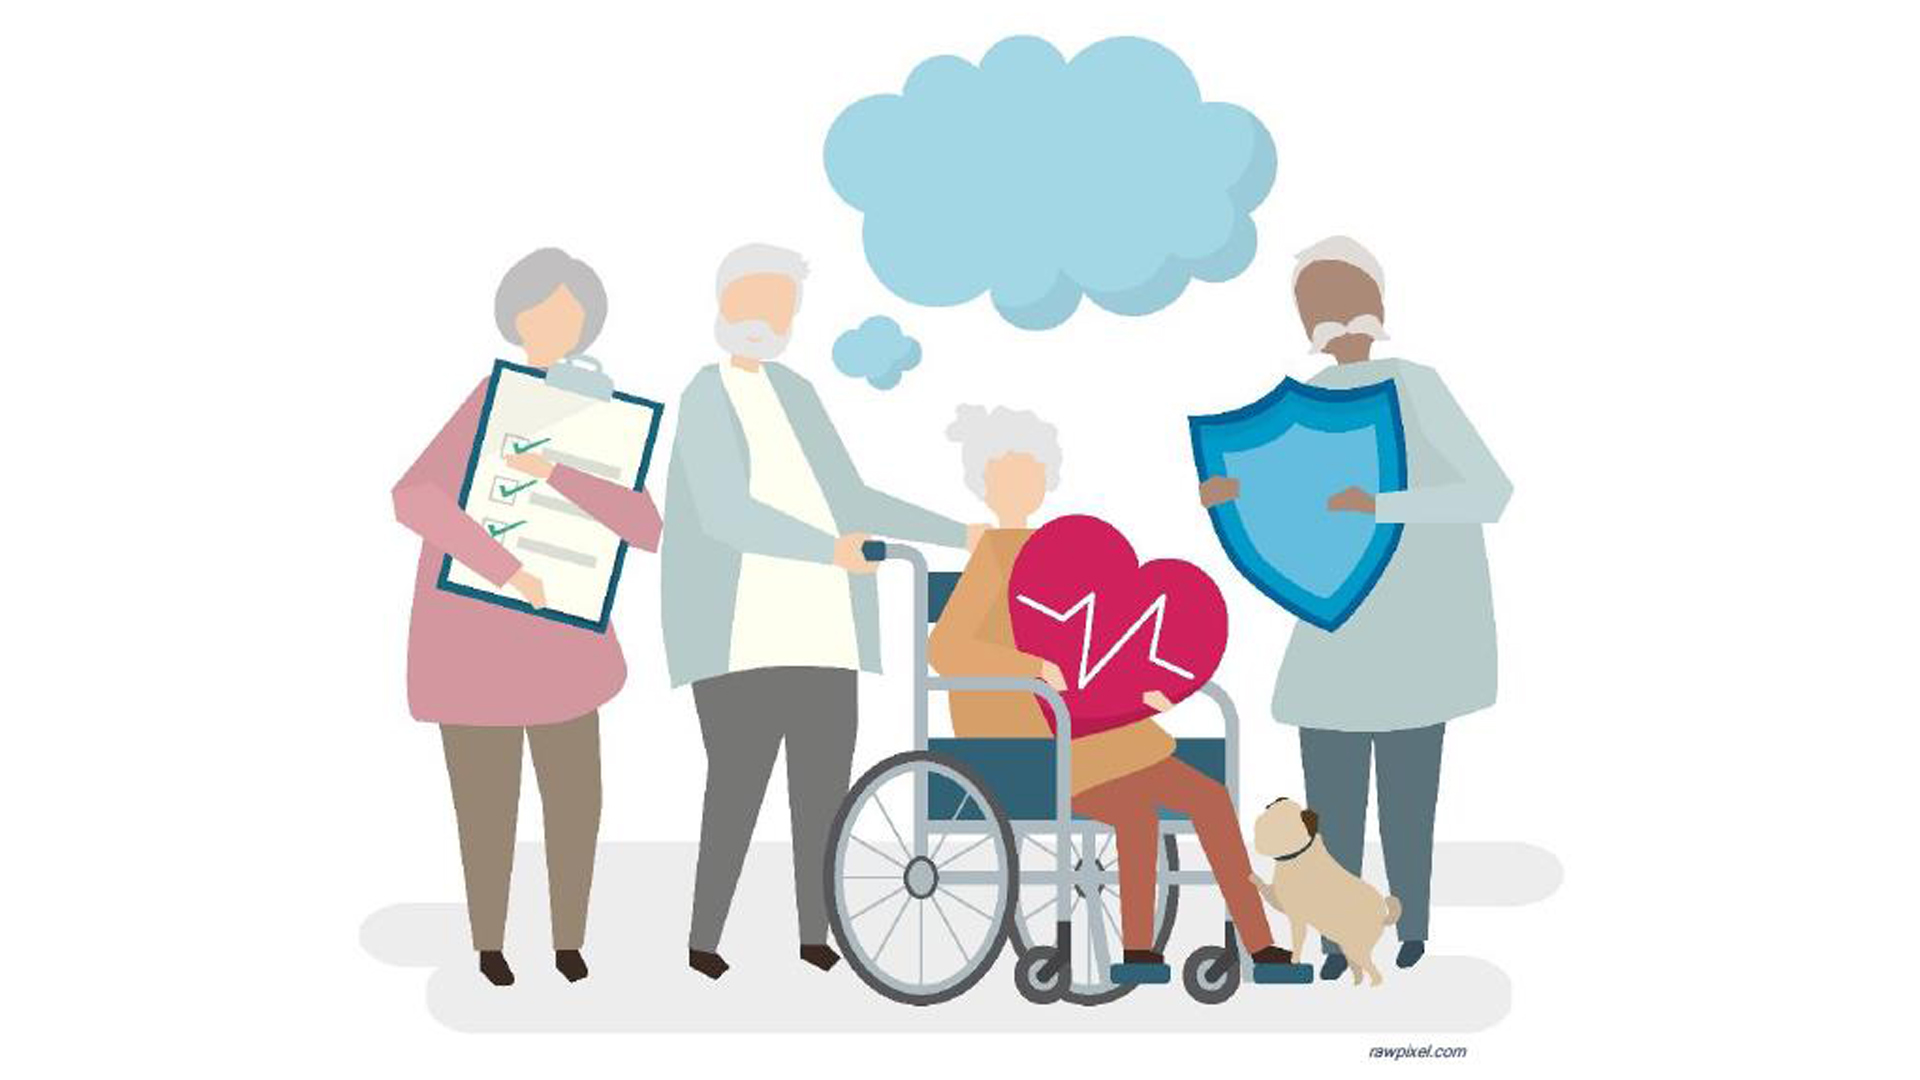 Ilustración que muestra a varias personas mayores con símbolos de salud y bienestar.